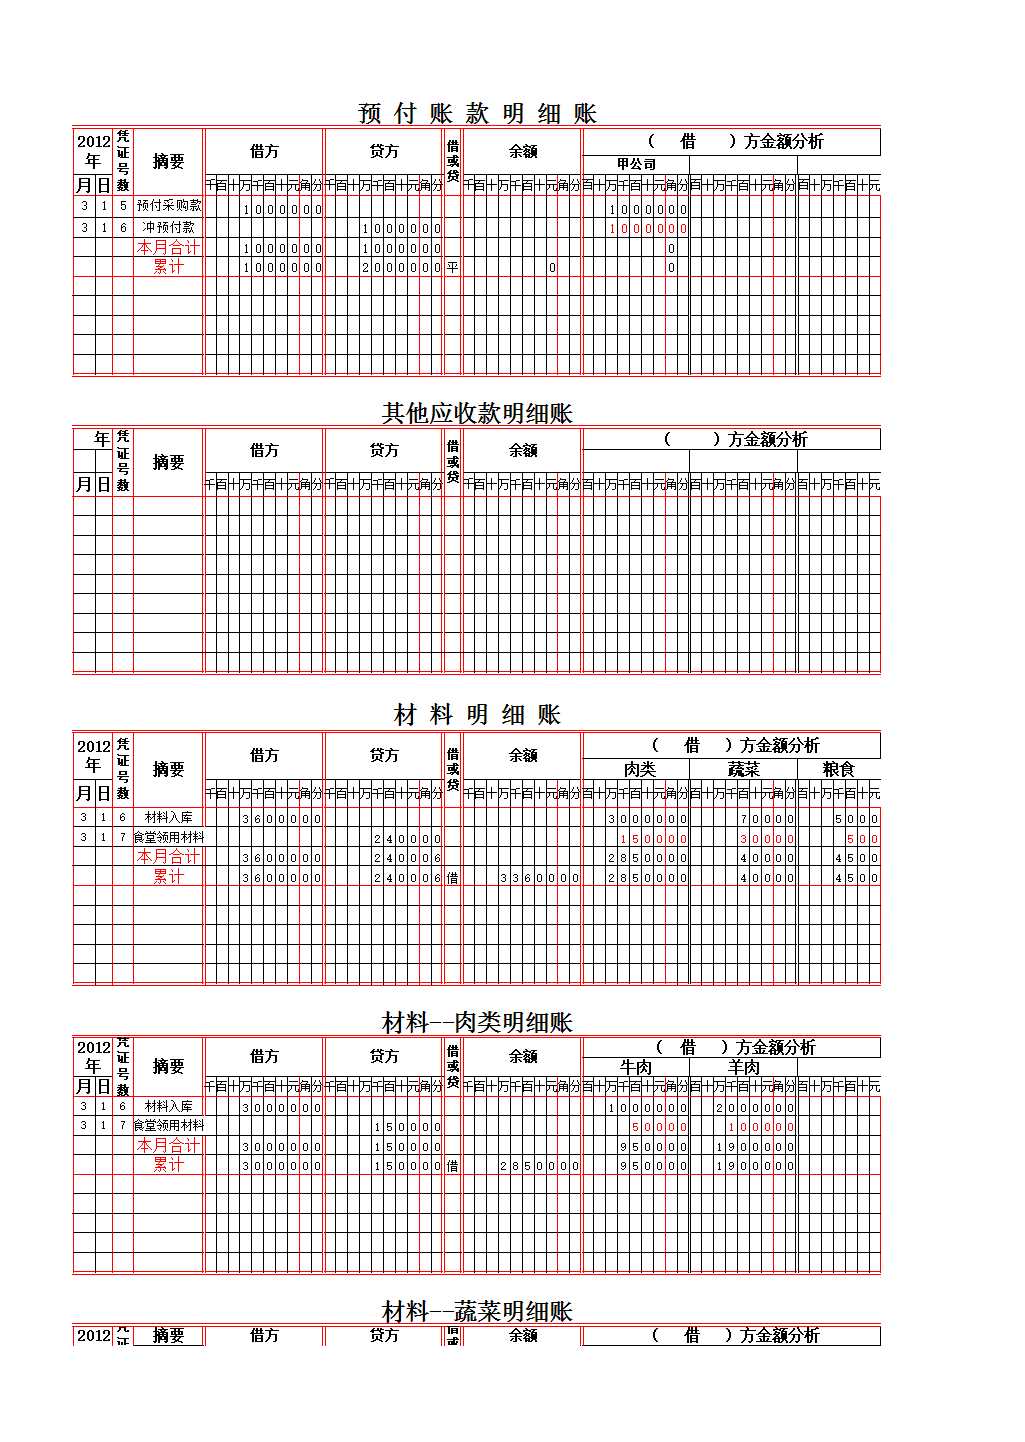 食堂账簿Excel模板_04